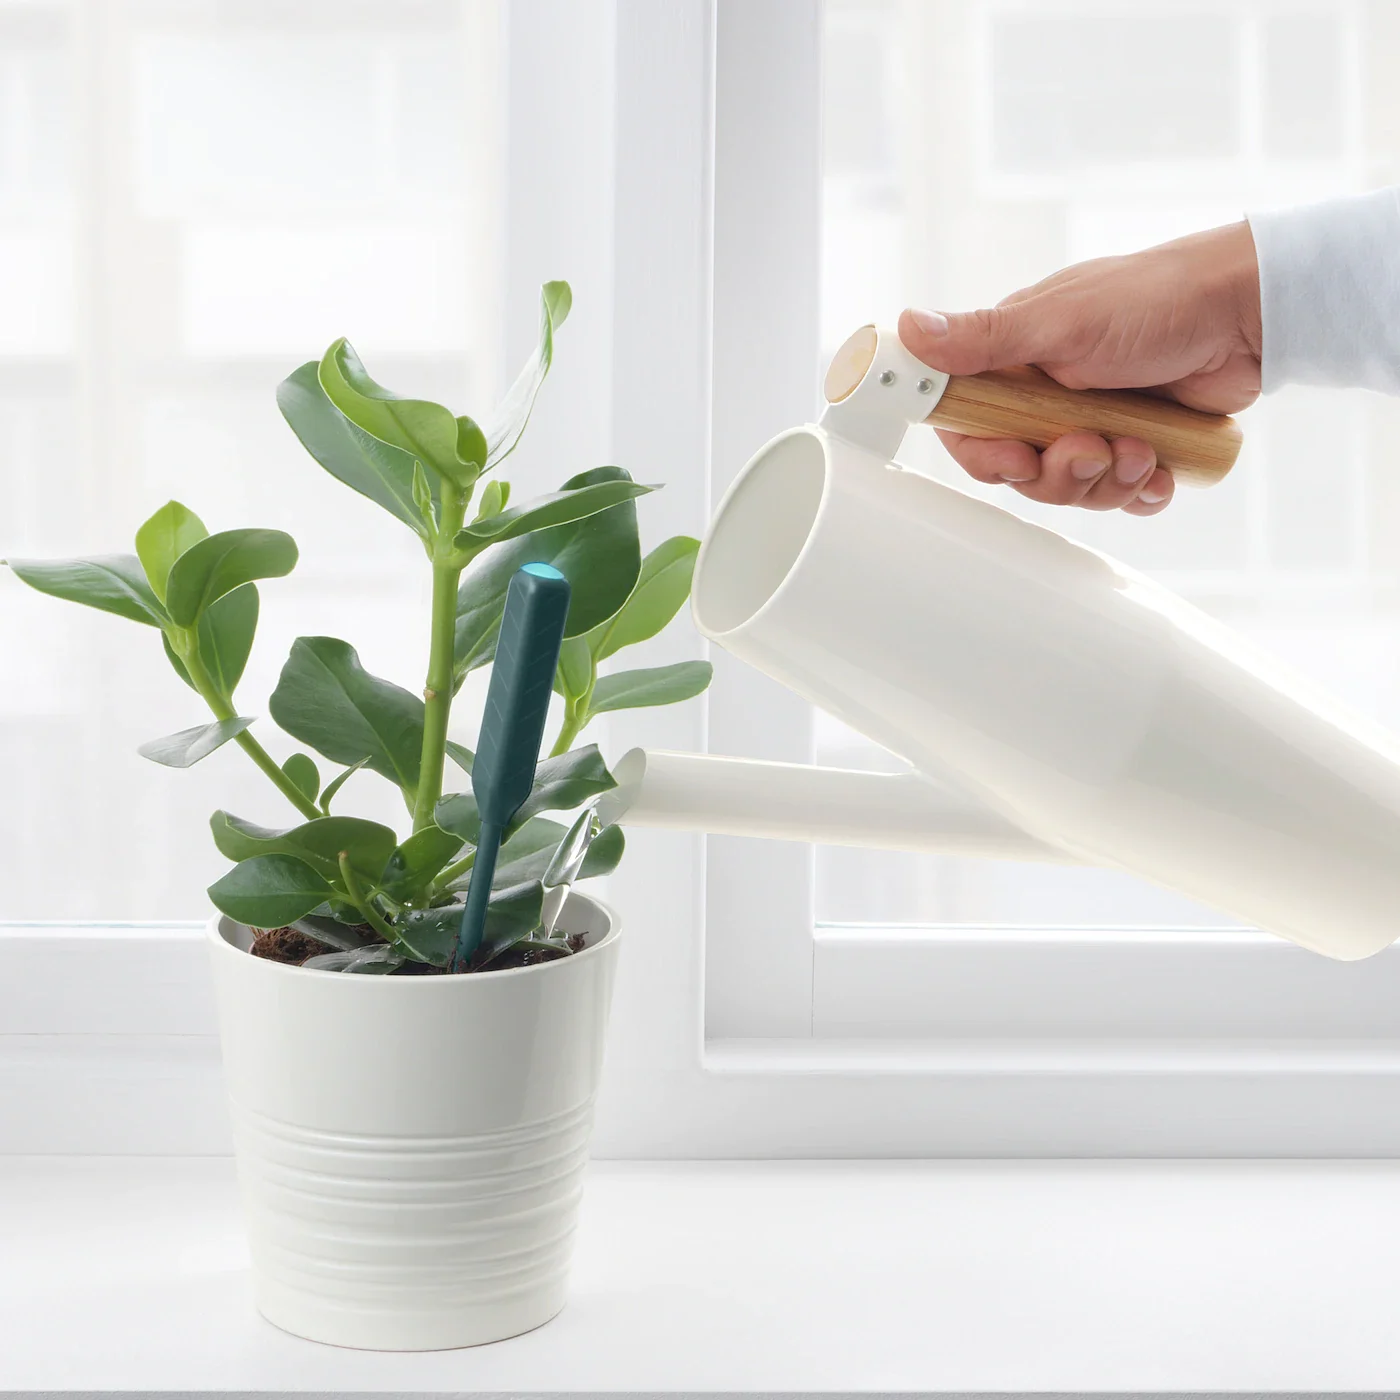 Ikea lanza un sensor de humedad digital de 4 euros para saber cuando regar  las plantas